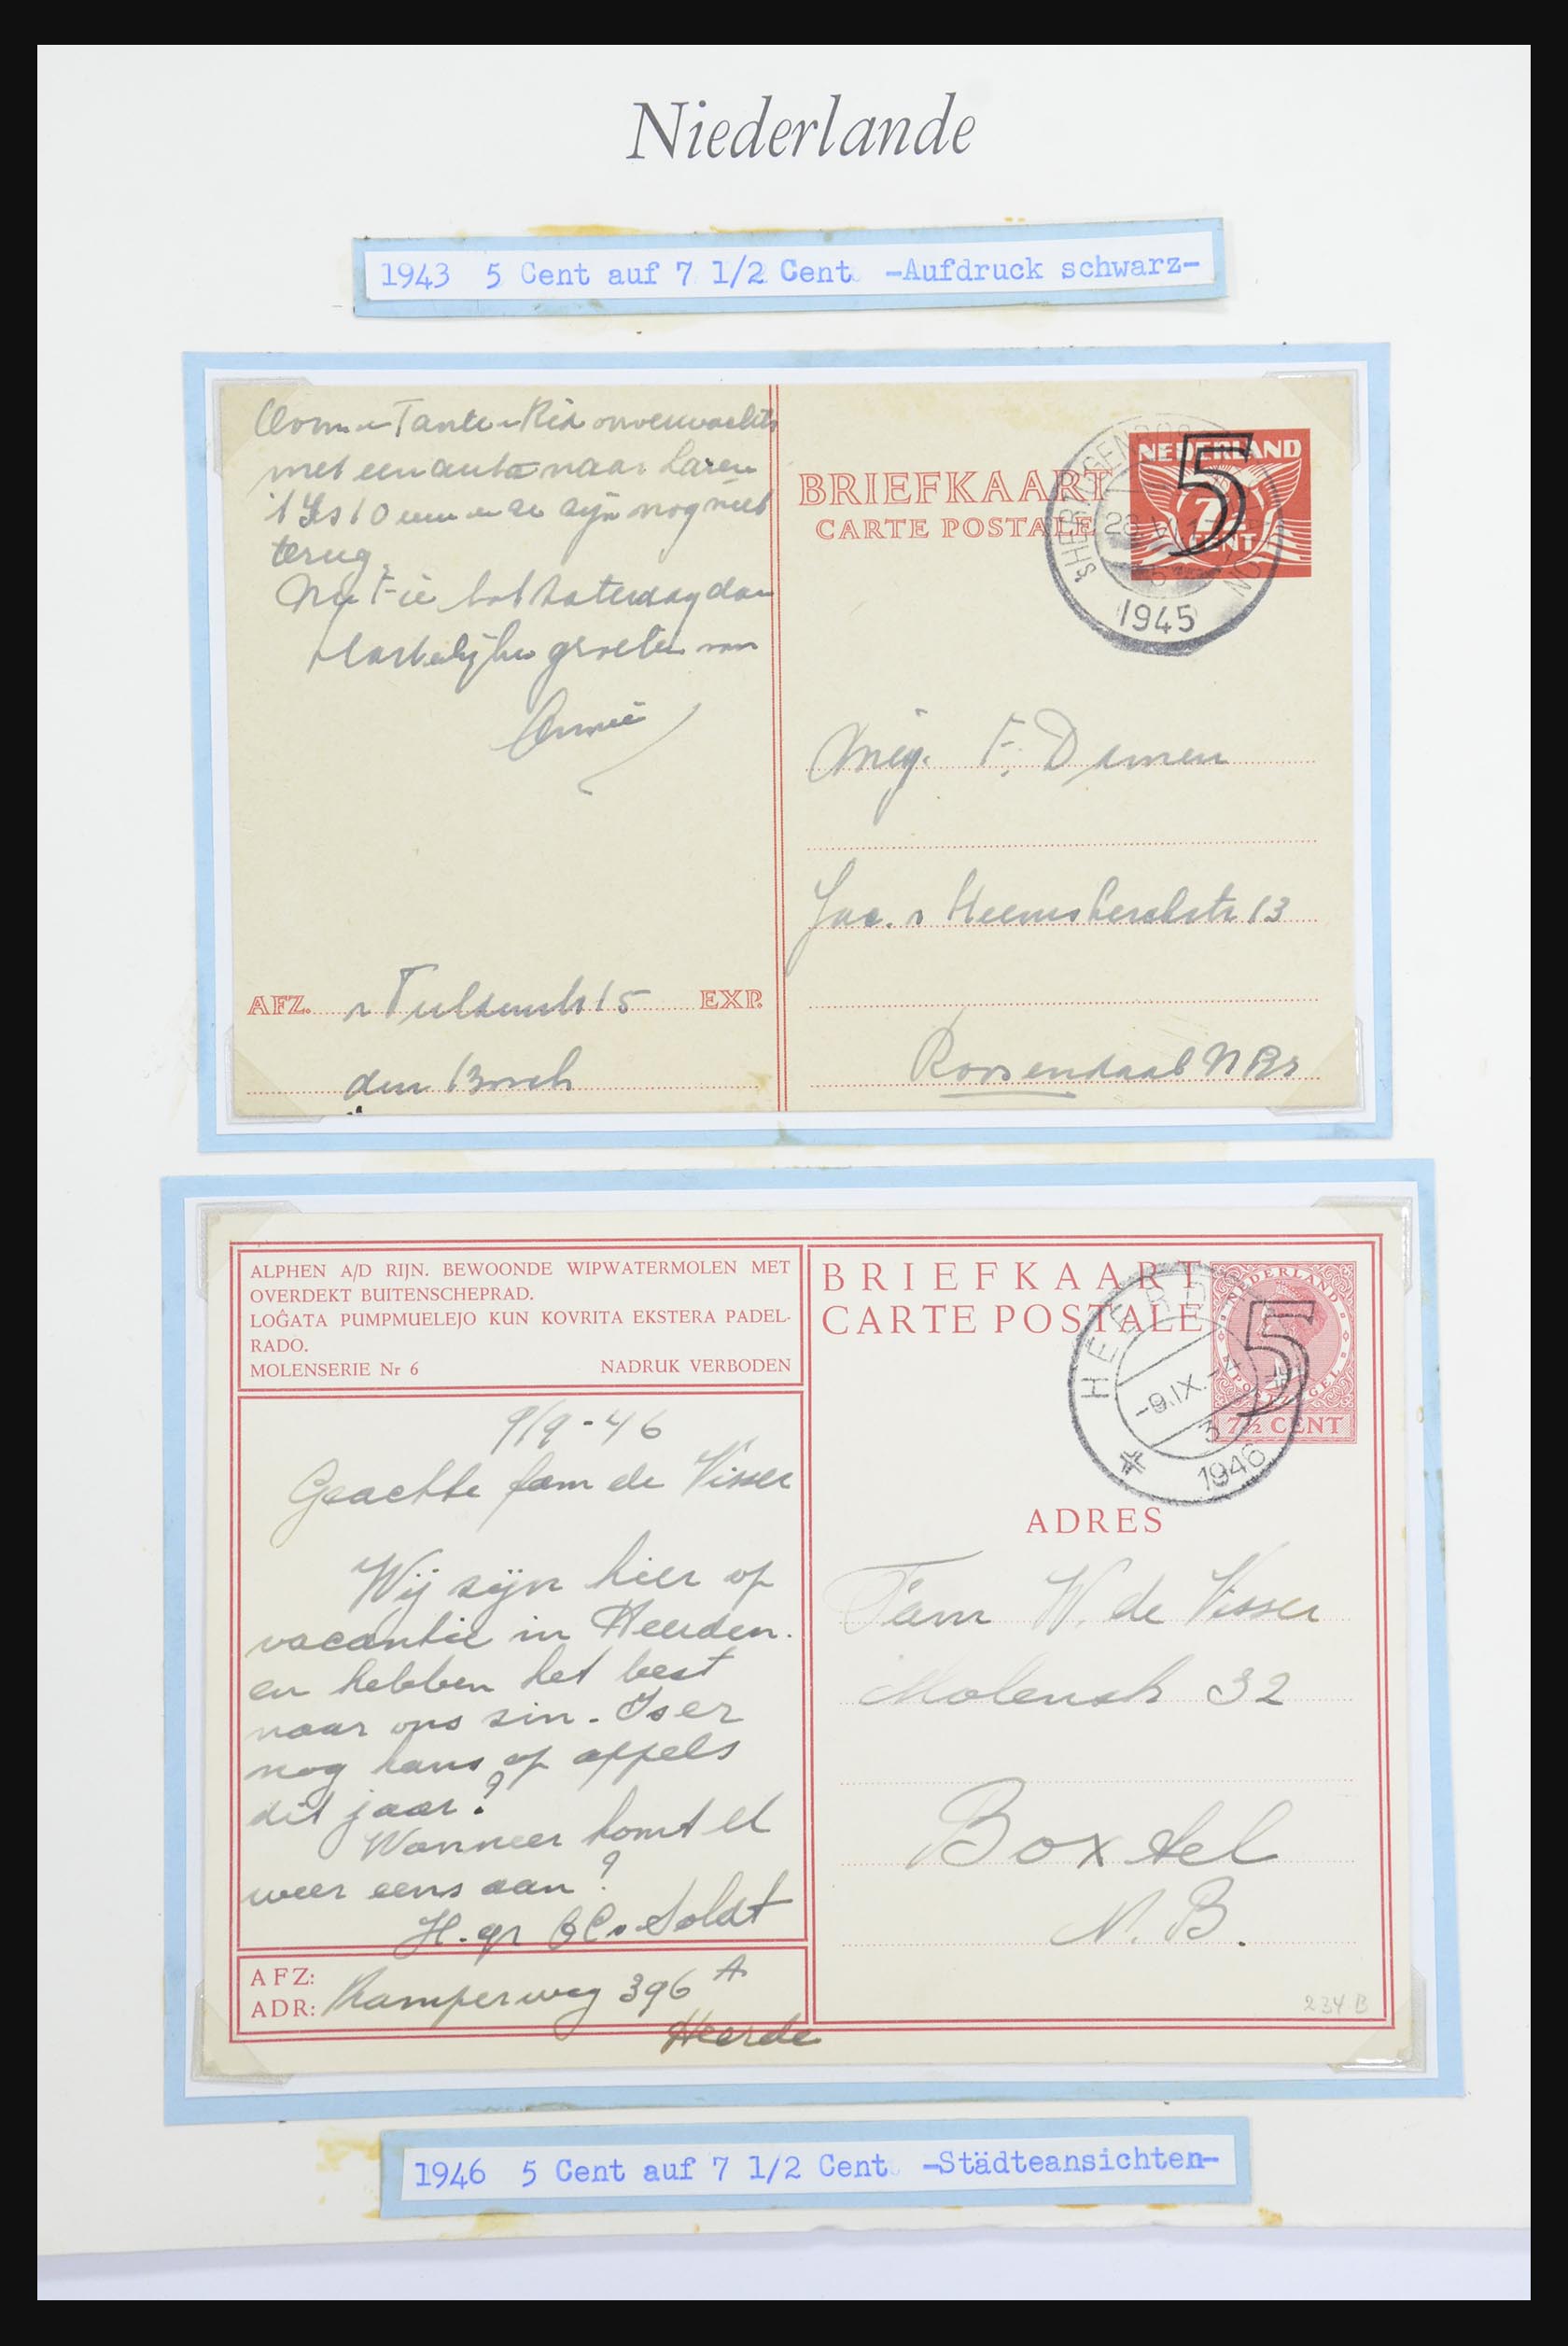 32159 051 - 32159 Nederland brieven 1925-1946.